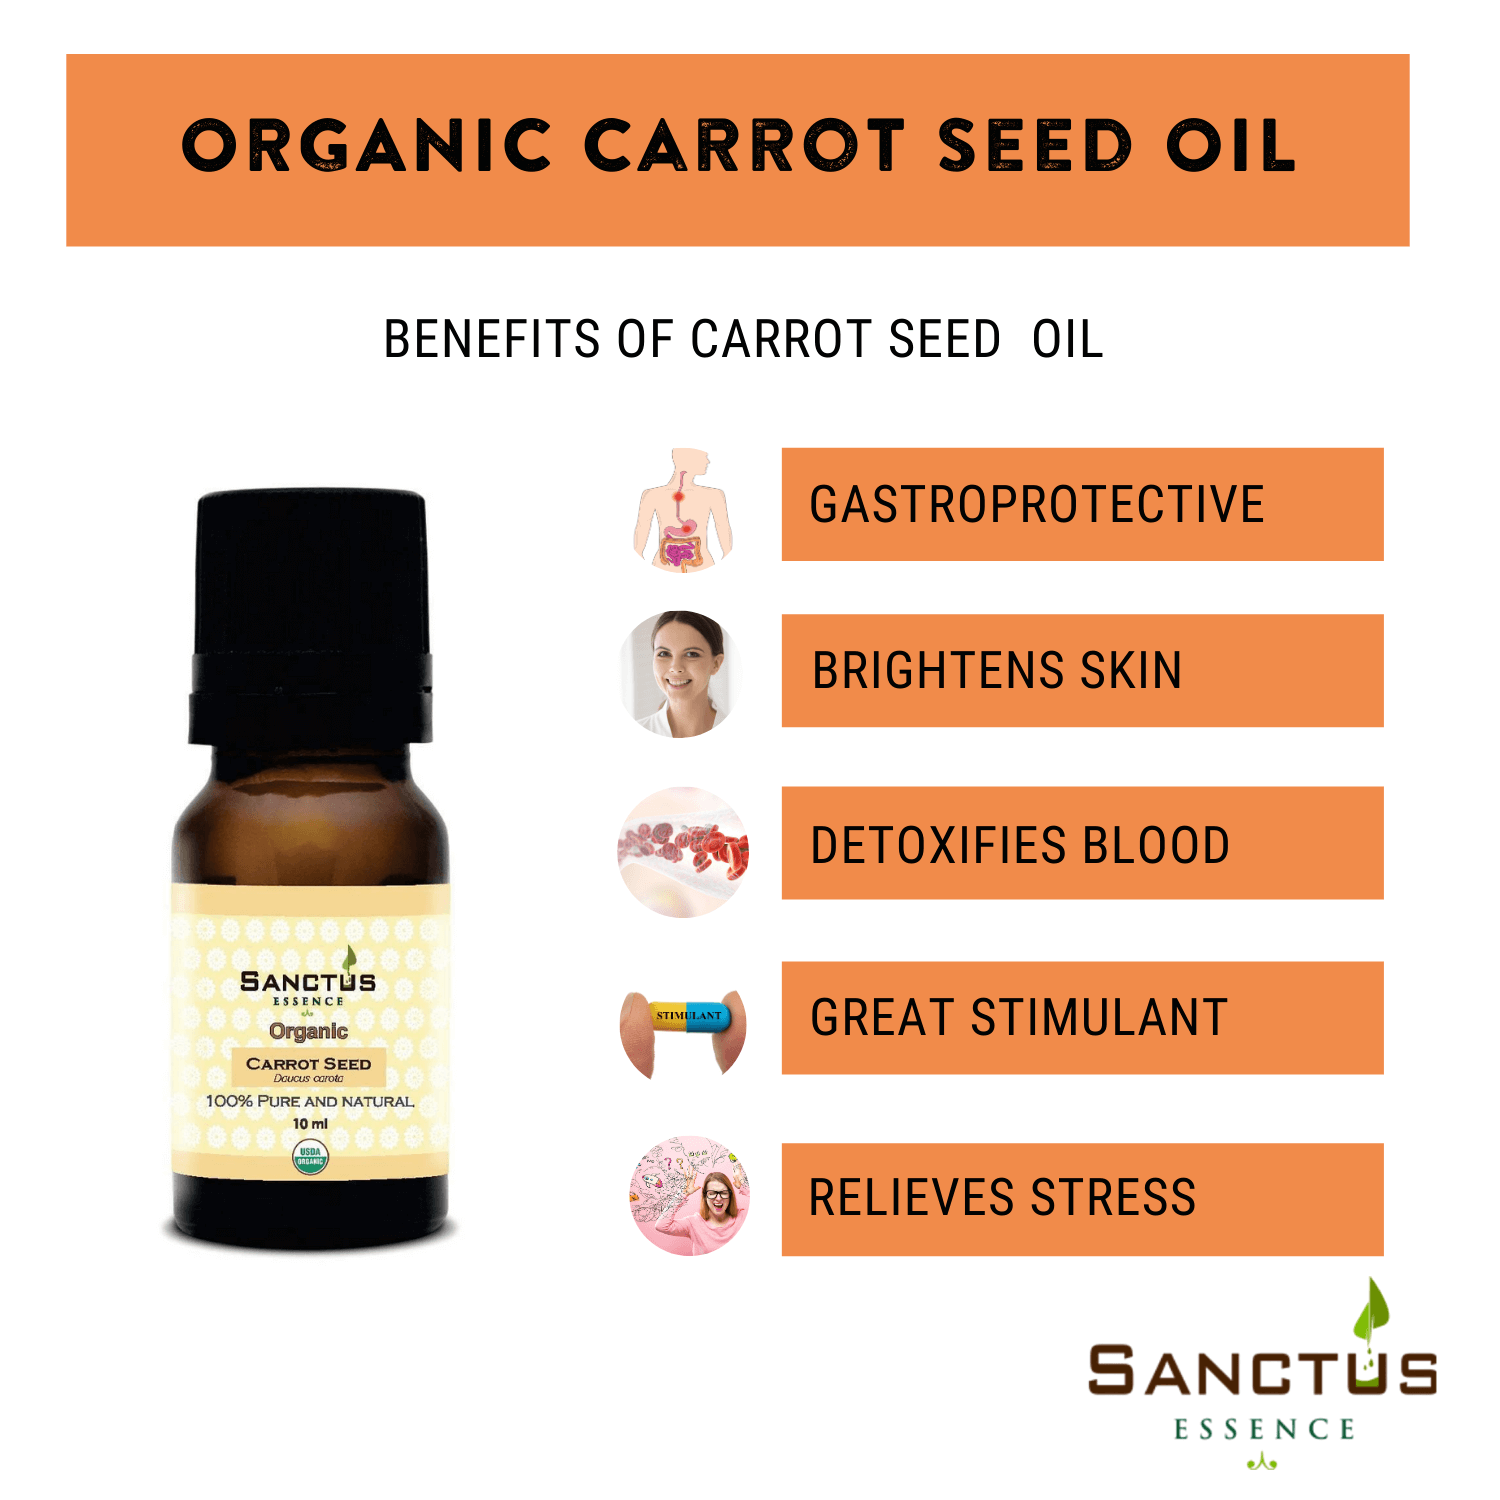 Organic Carrot seed oil